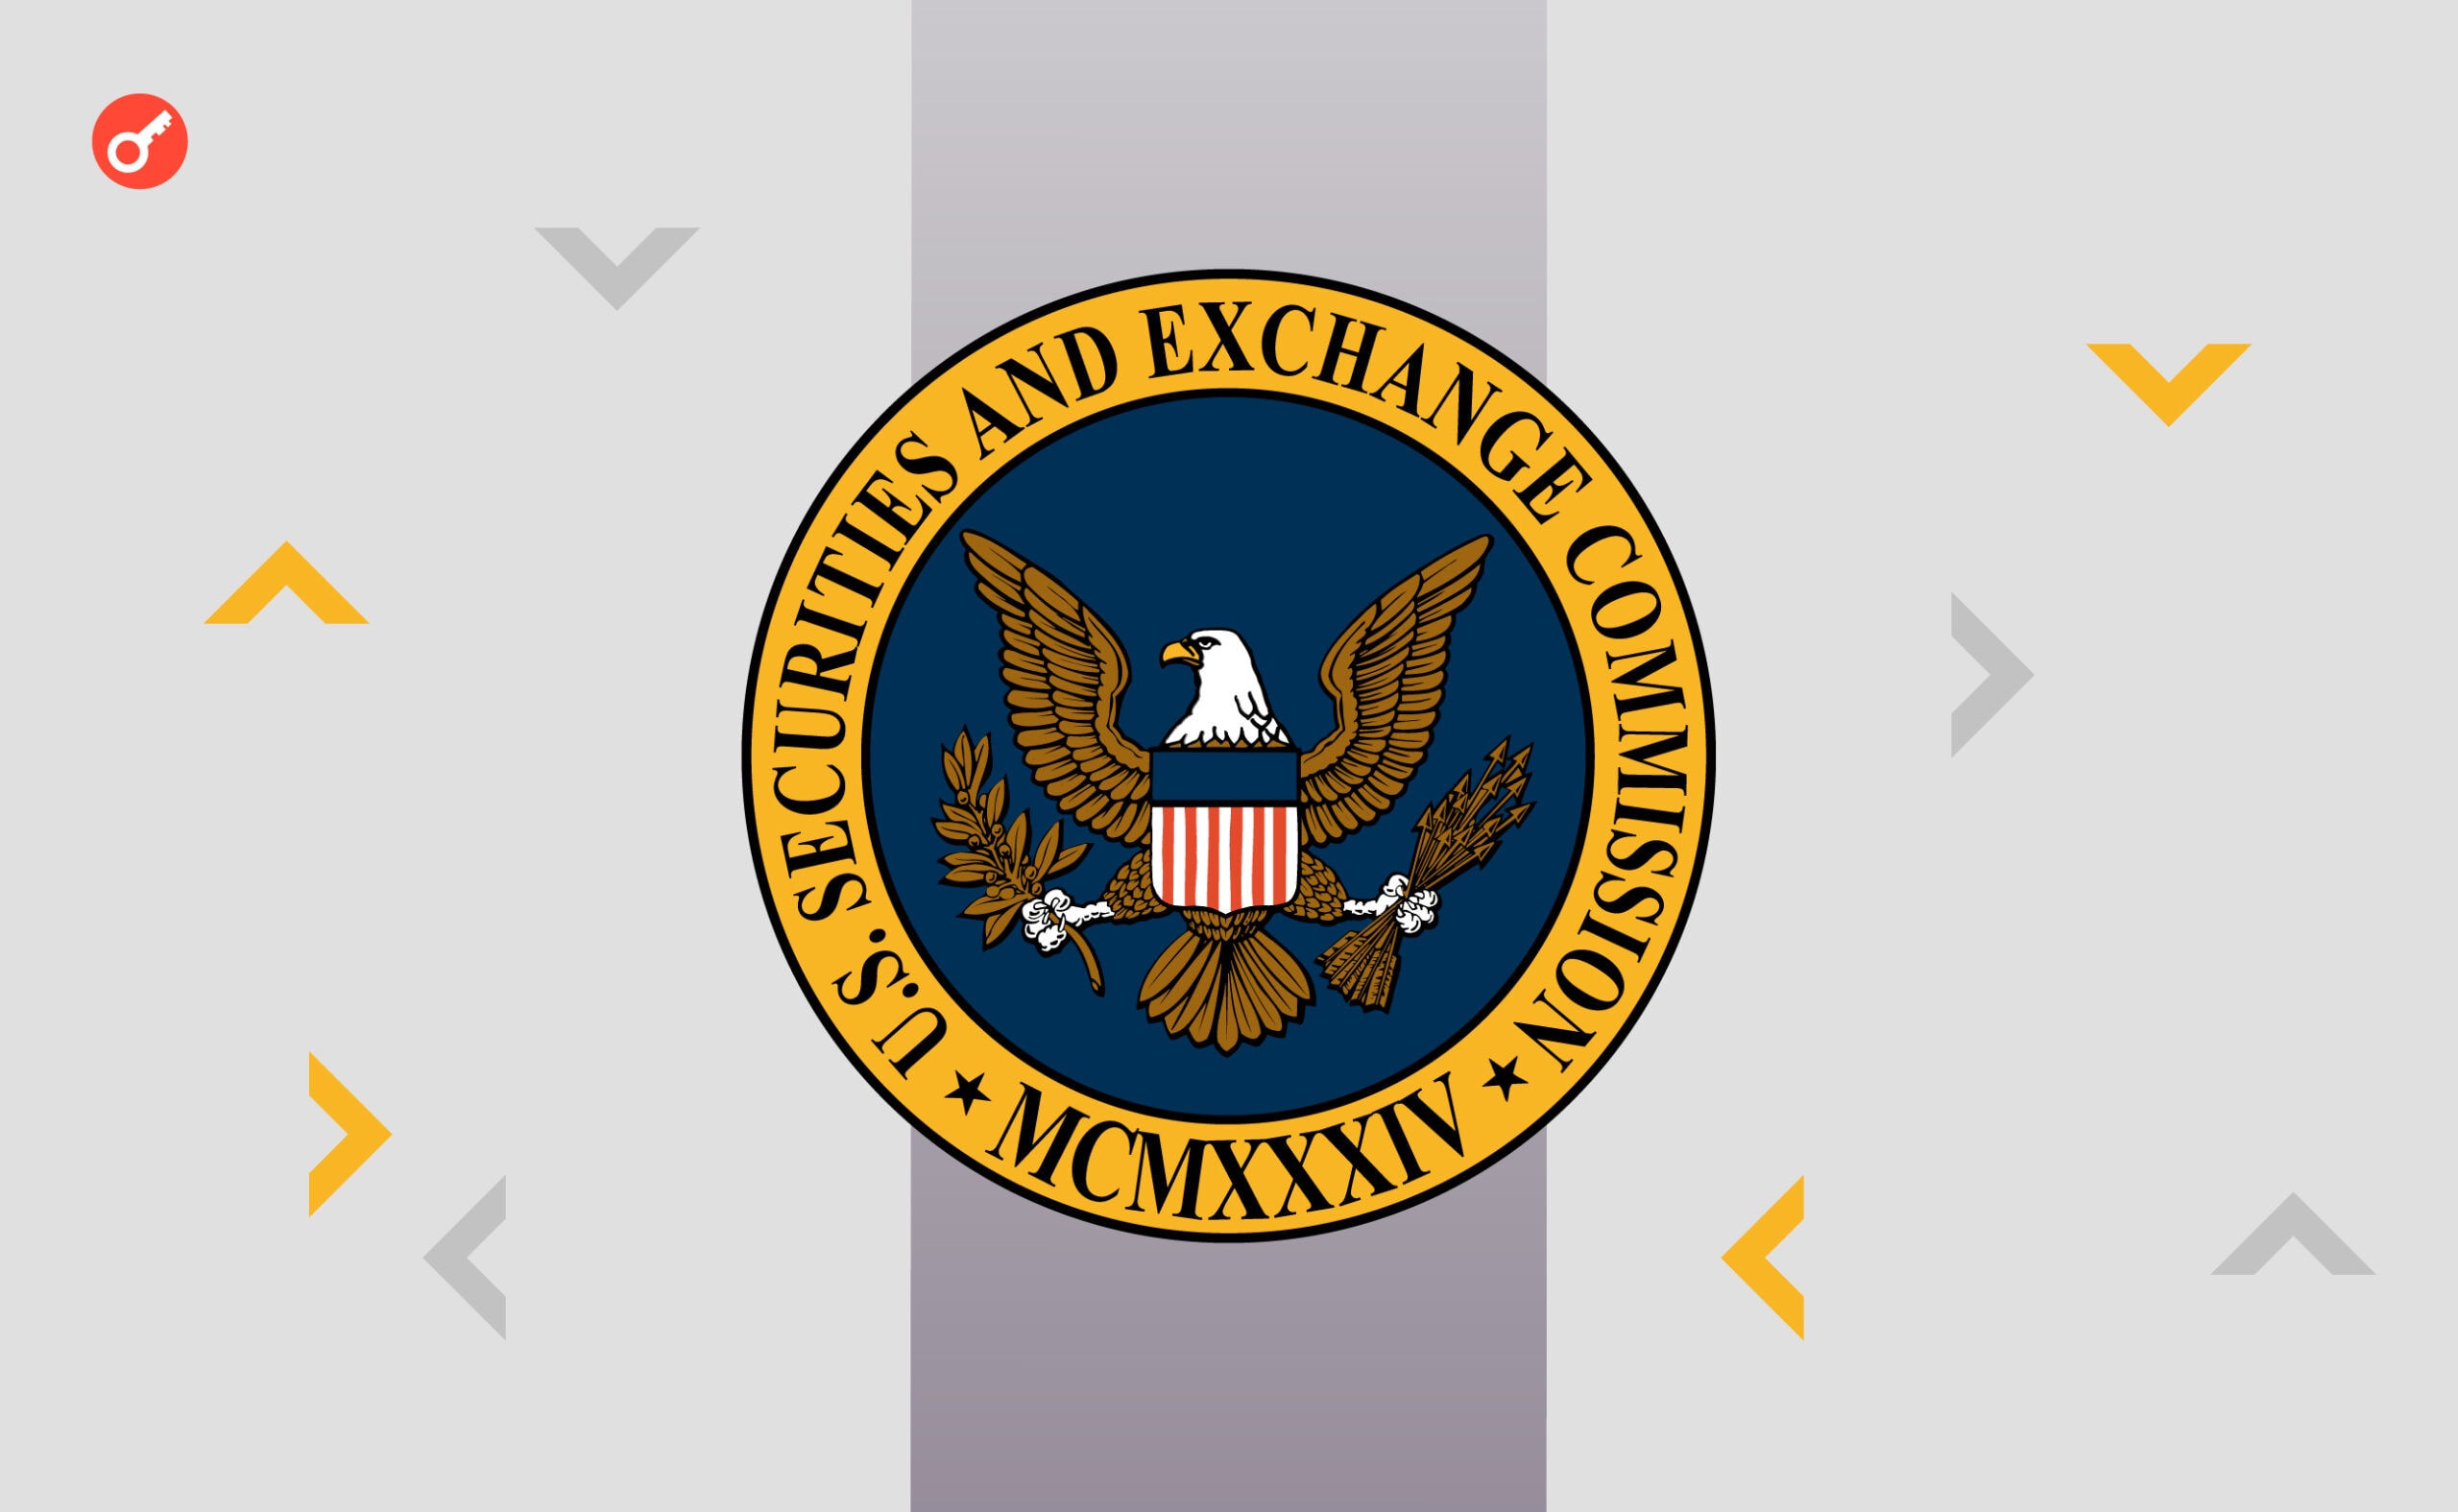 SEC не имеет полномочий для регулирования криптовалютного сегмента — экс-советник регулятора. Заглавный коллаж новости.